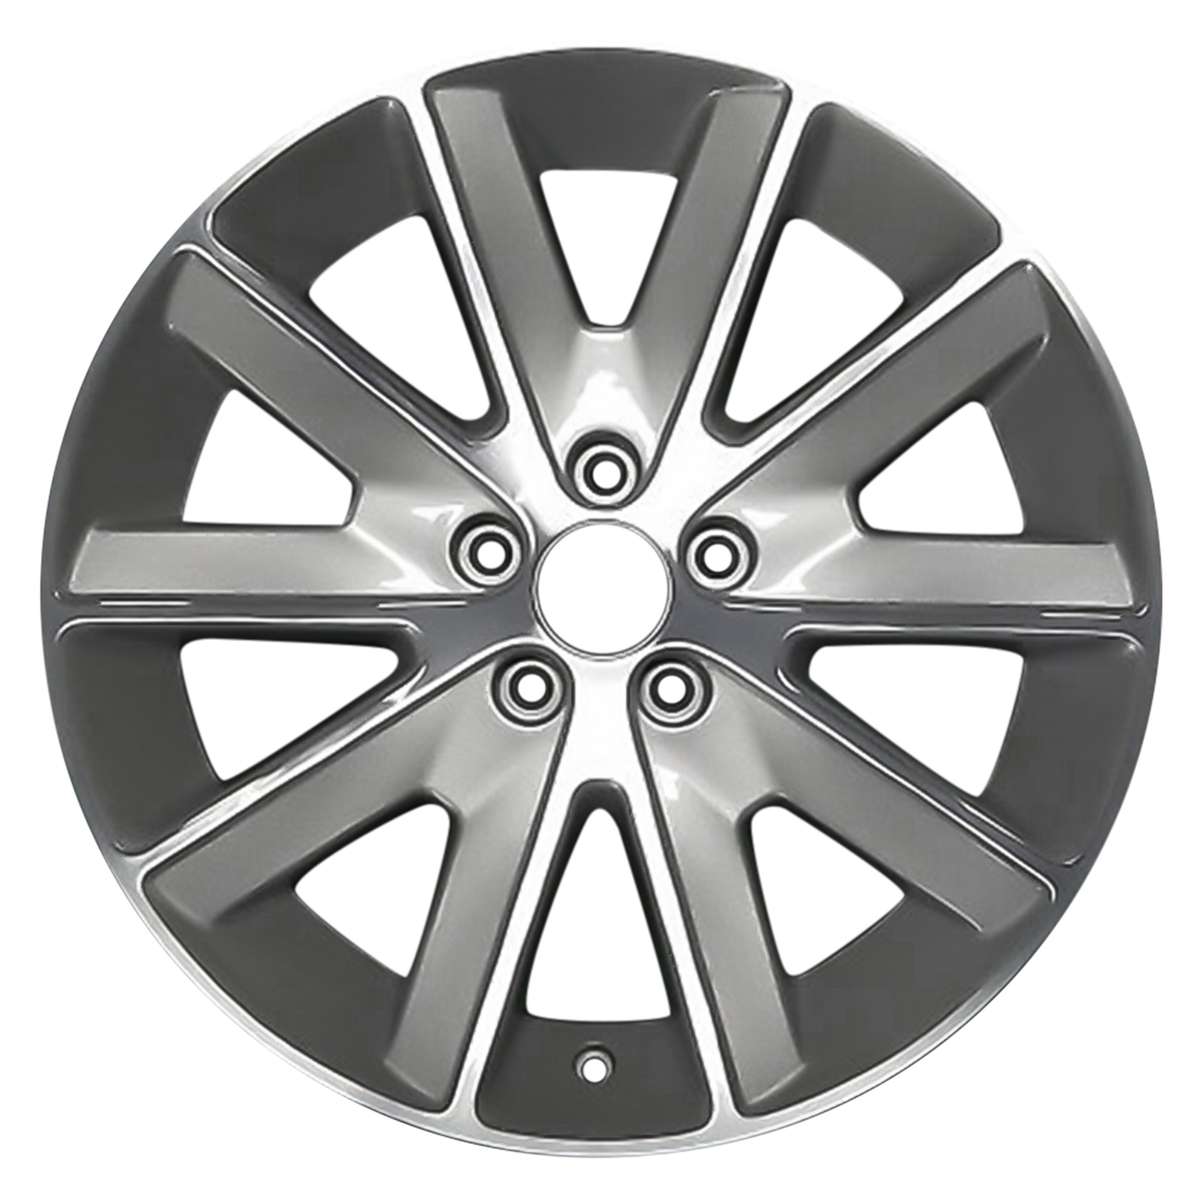 2011 Ford Flex 18" OEM Wheel Rim W10155H